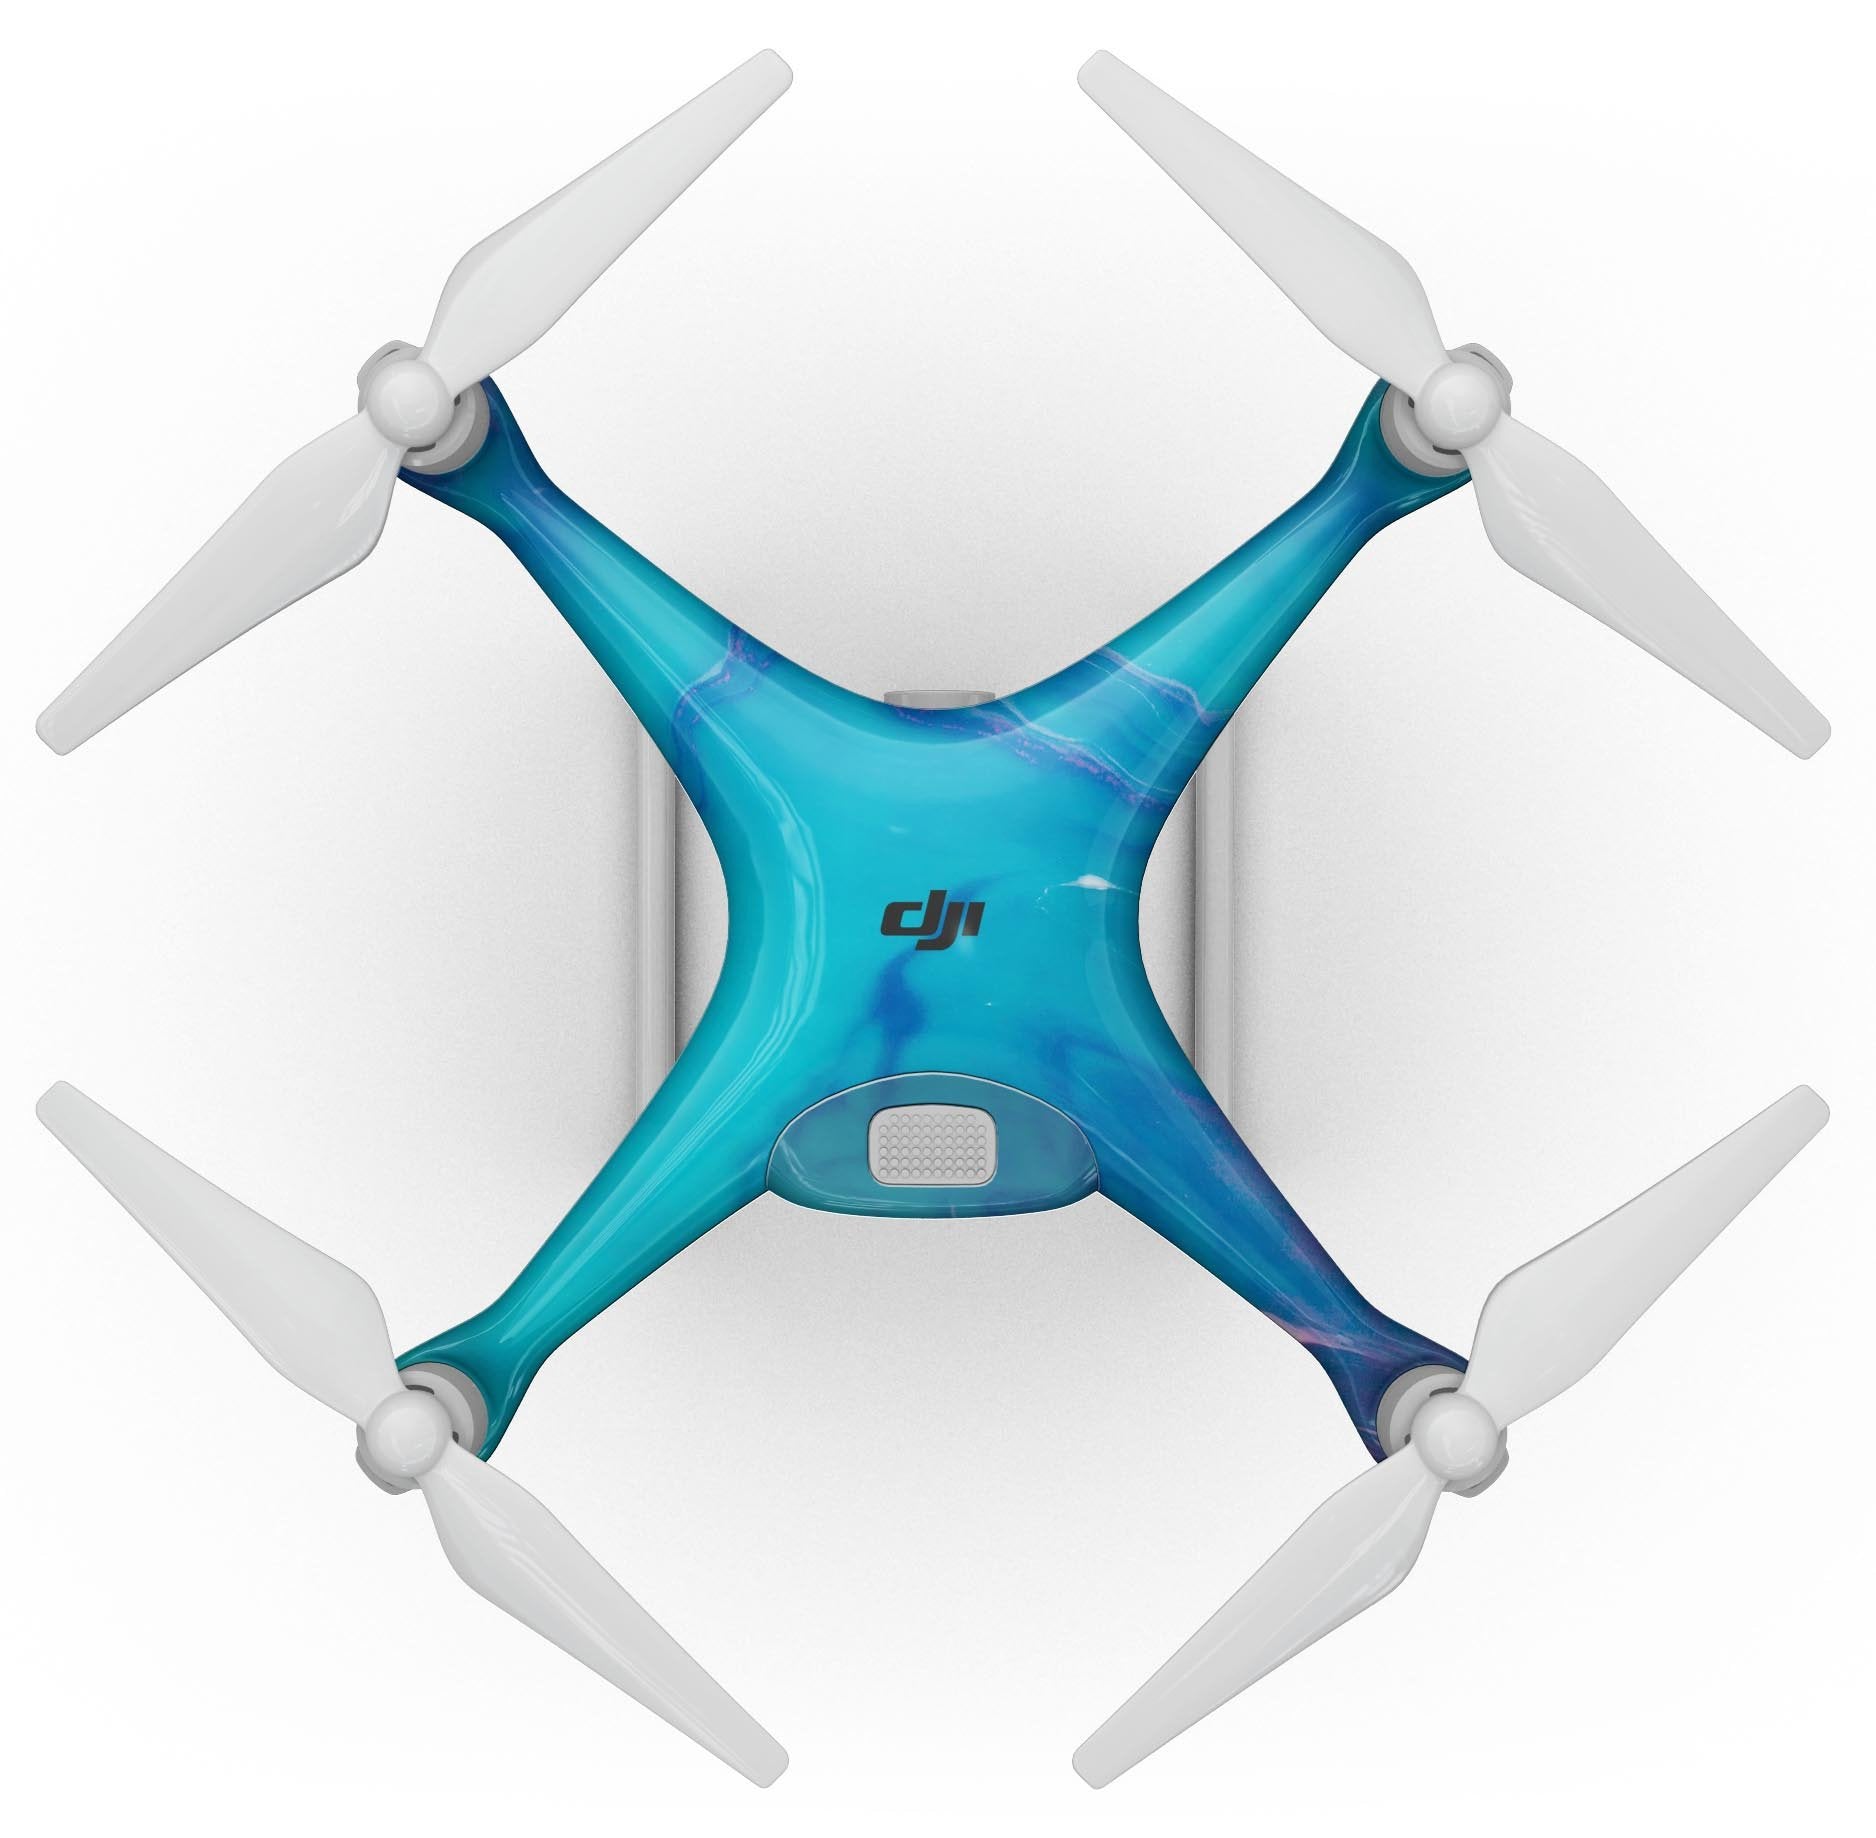 Marbleized Ocean Blue - Full-Body Skin Kit for the DJI Phantom 4 Drone